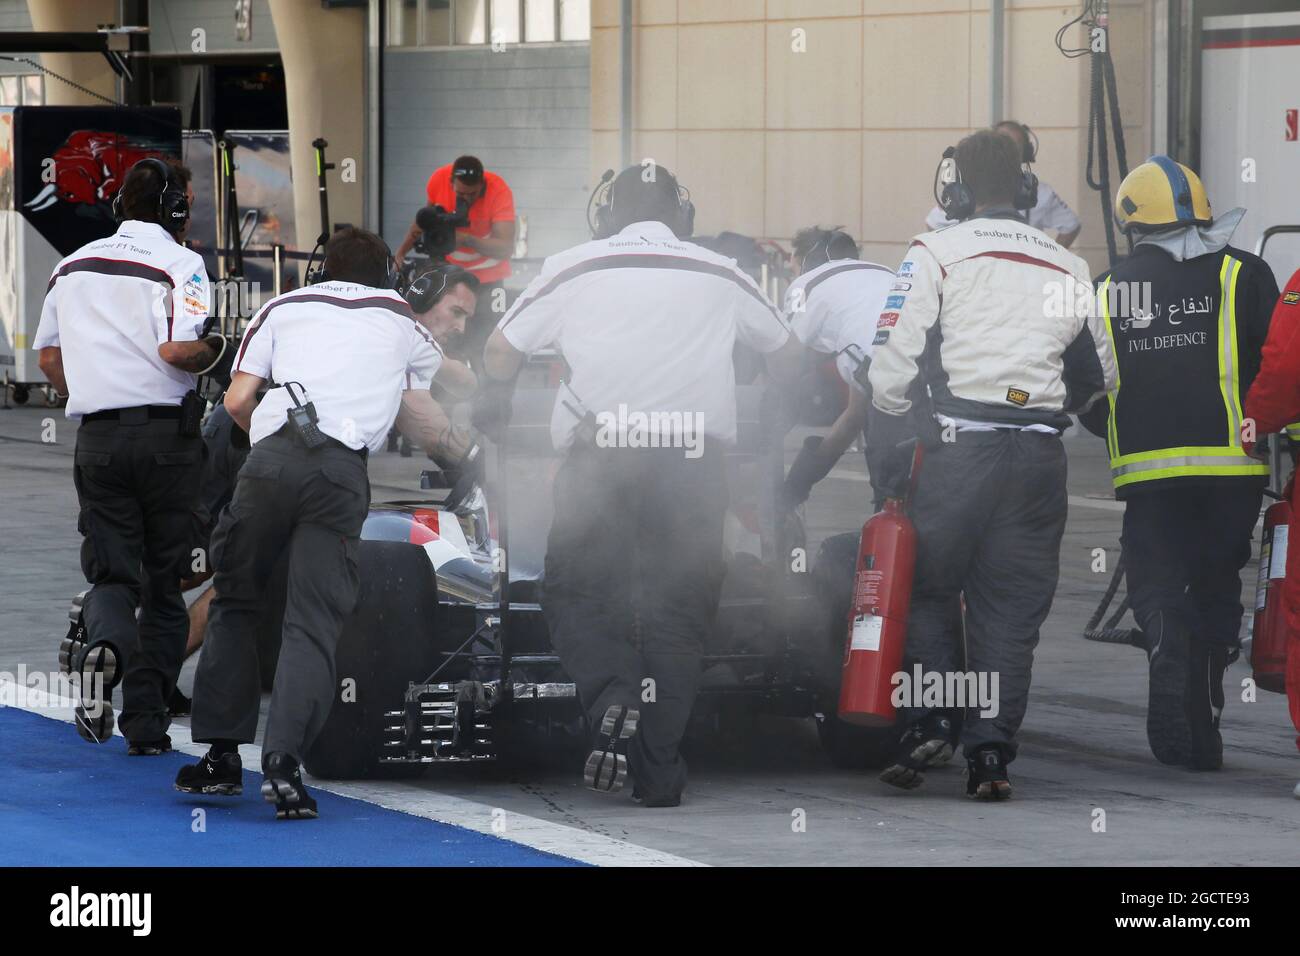 Le fumeur Sauber C33 d'Adrian Sutil (GER) Sauber est poussé vers le bas de la voie de la fosse par les mécaniciens. Test de Formule 1, test de Bahreïn 2, troisième jour, samedi 1er match 2014. Sakhir, Bahreïn. Banque D'Images